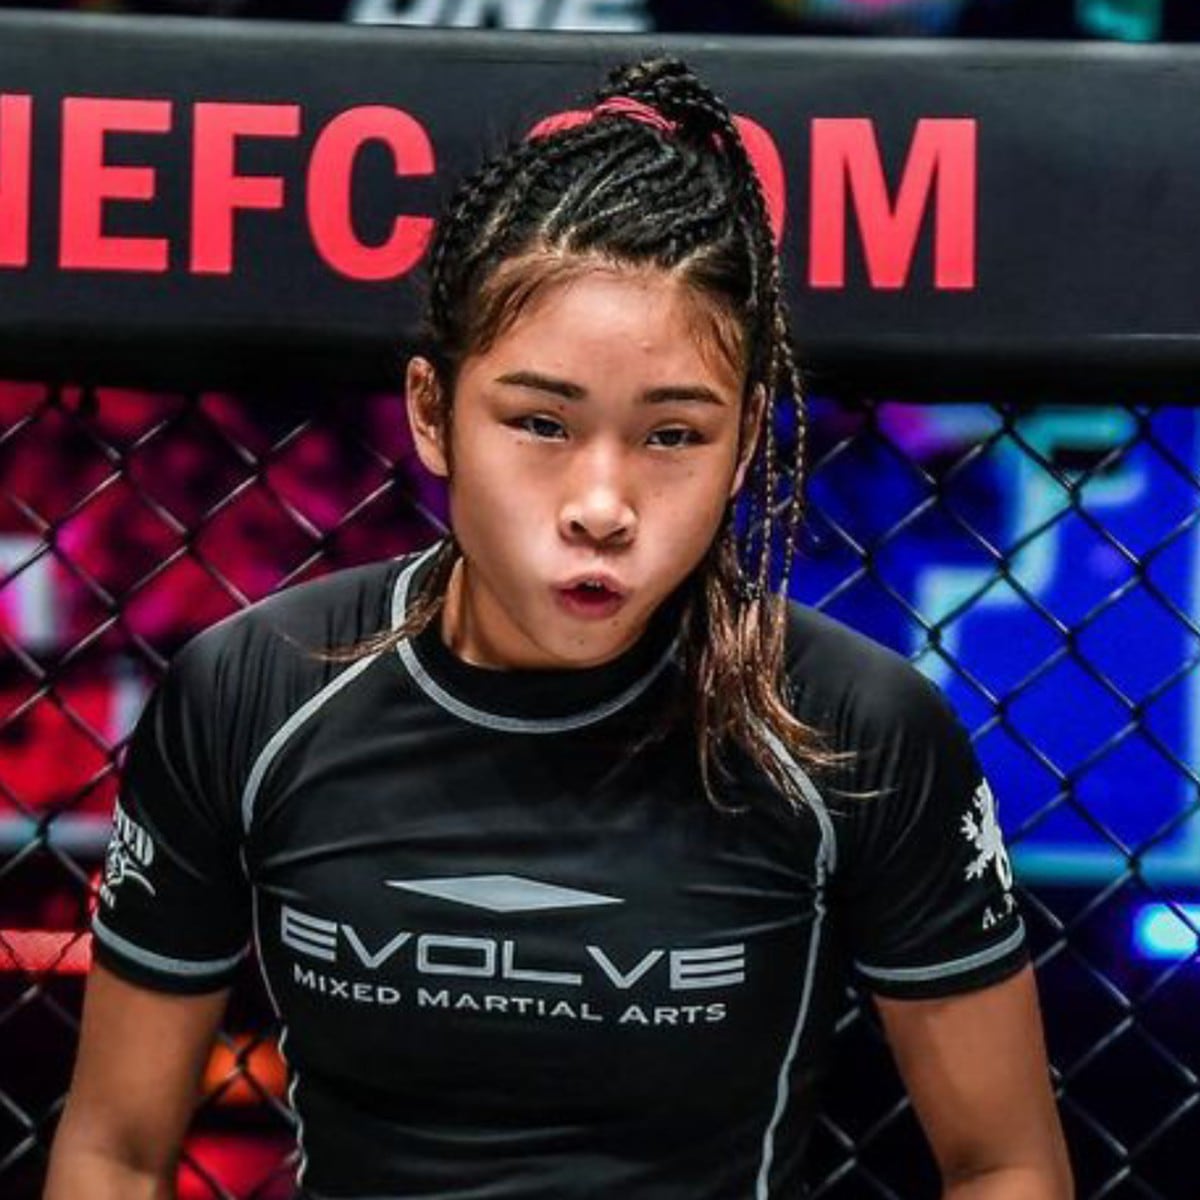 Fallece peleadora Victoria Lee, promesa de las artes marciales mixtas, a los 18 años